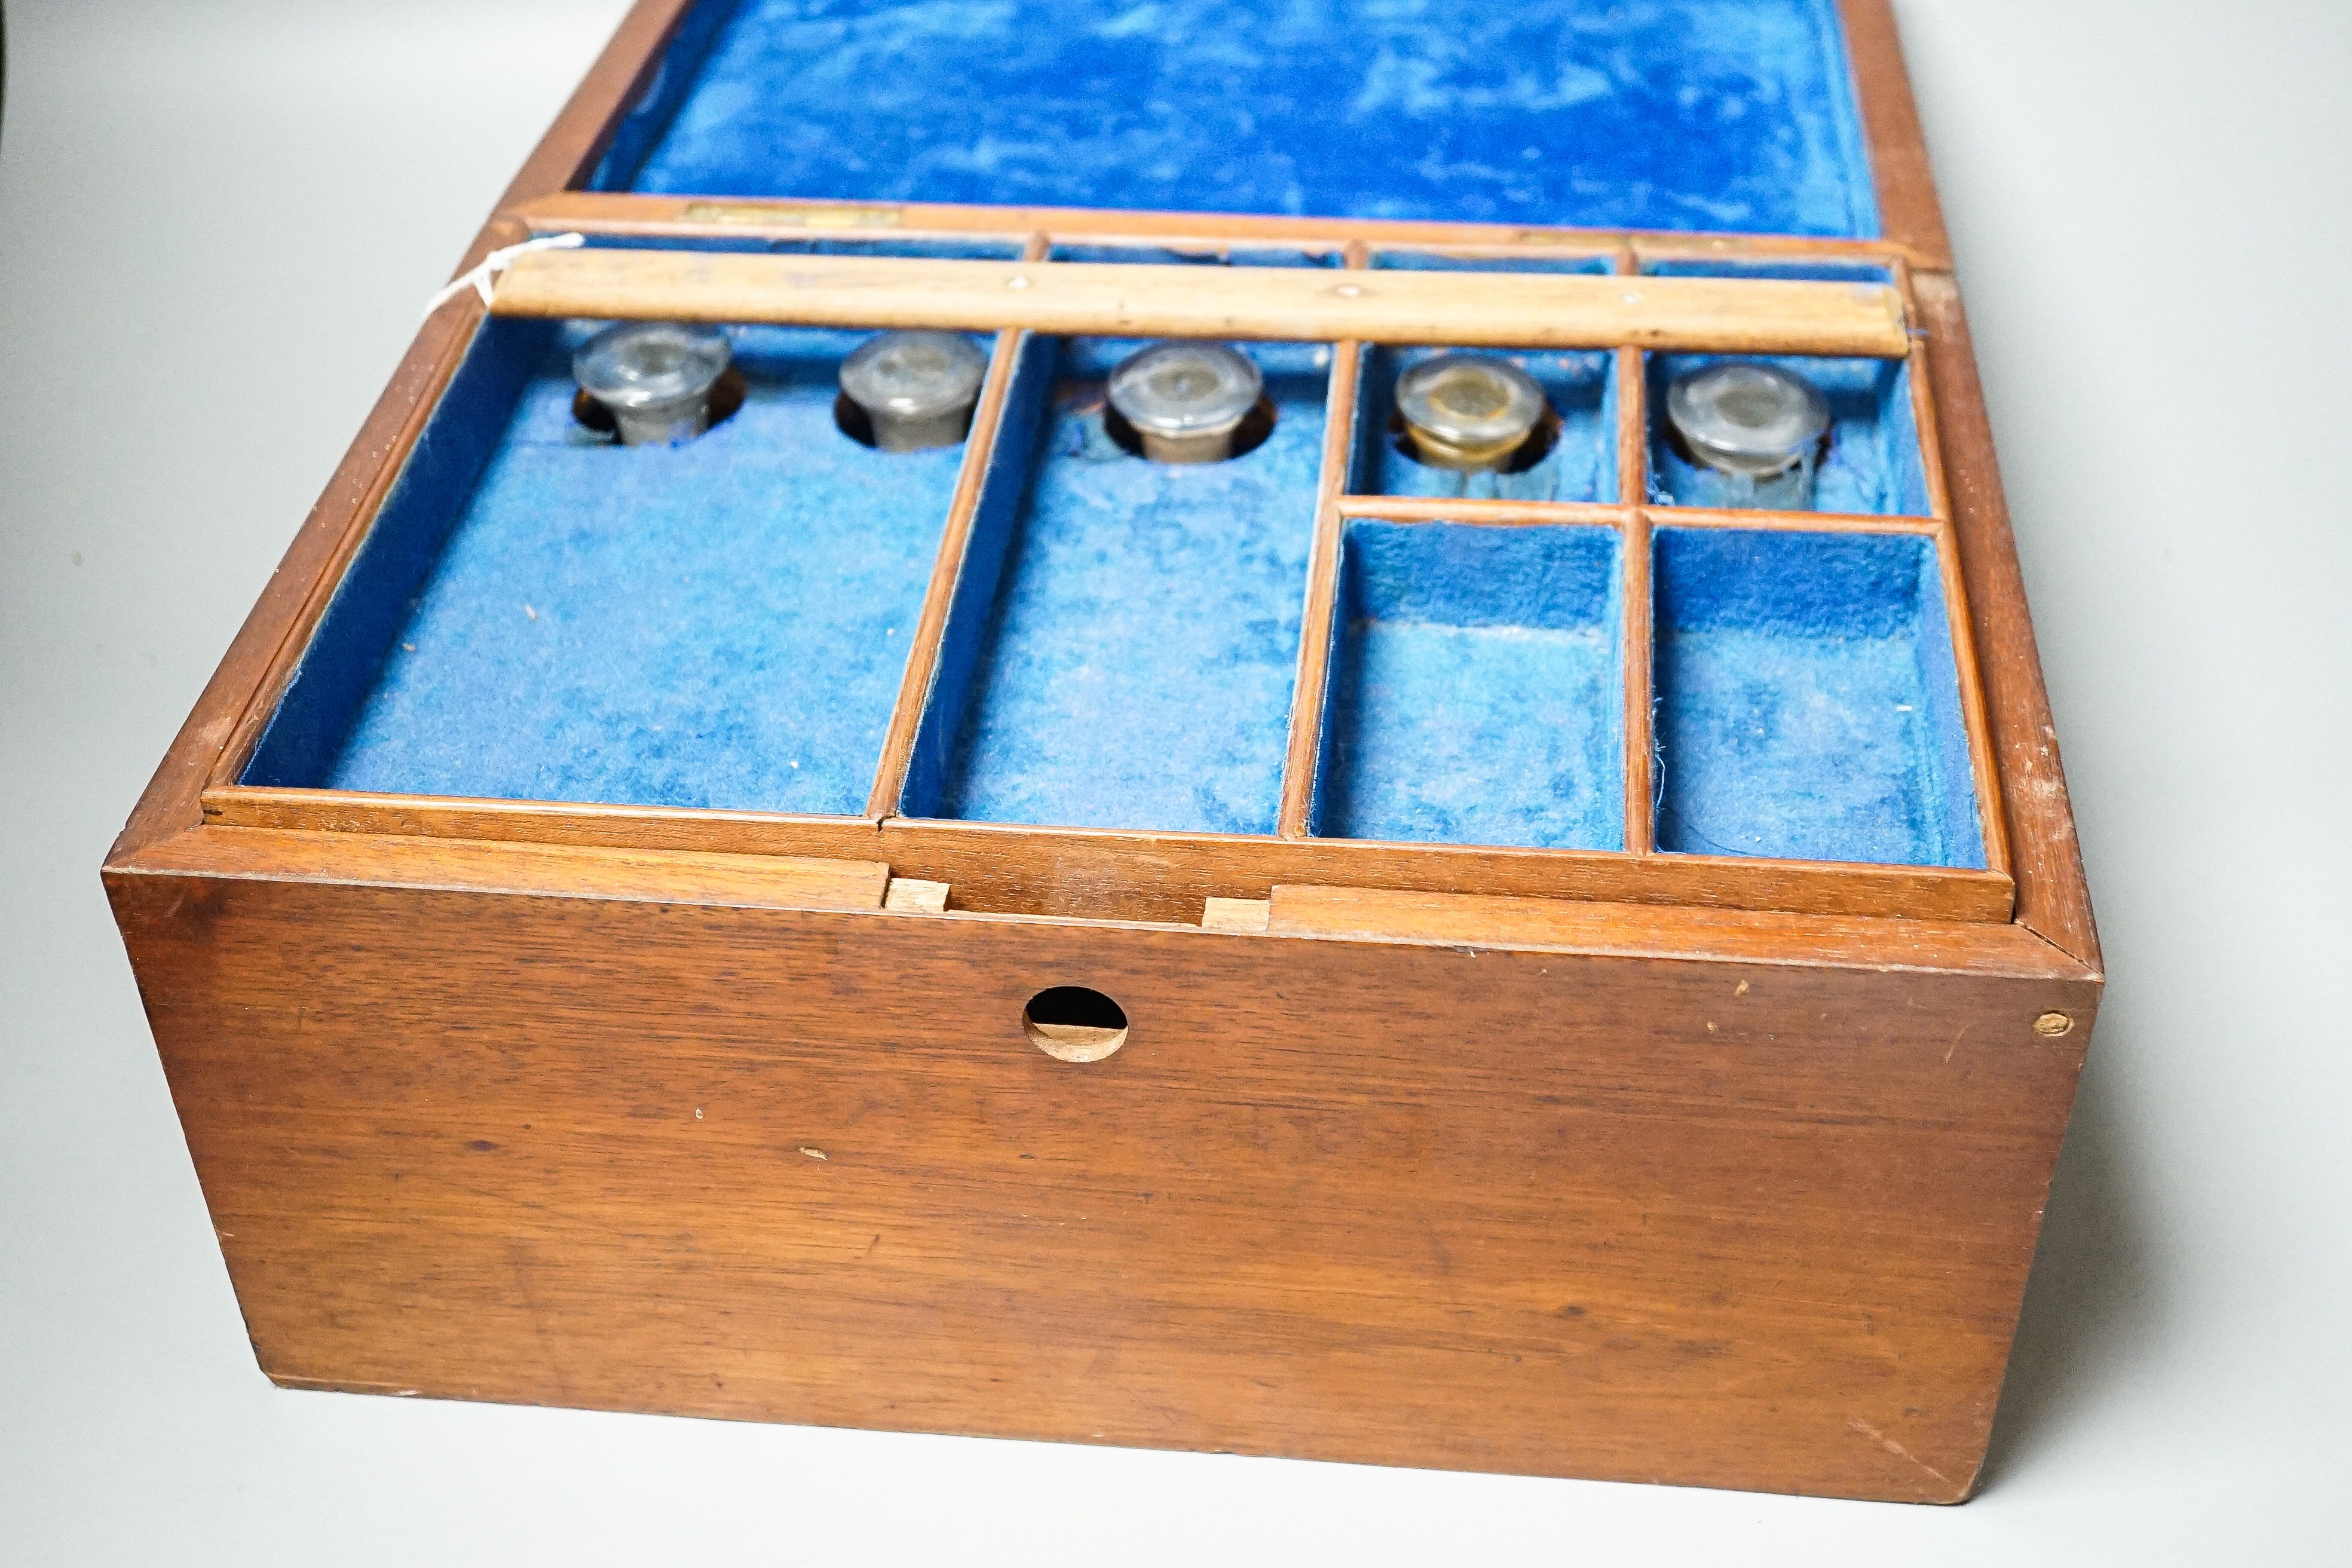 A 19th century mahogany apothecary box 33cm